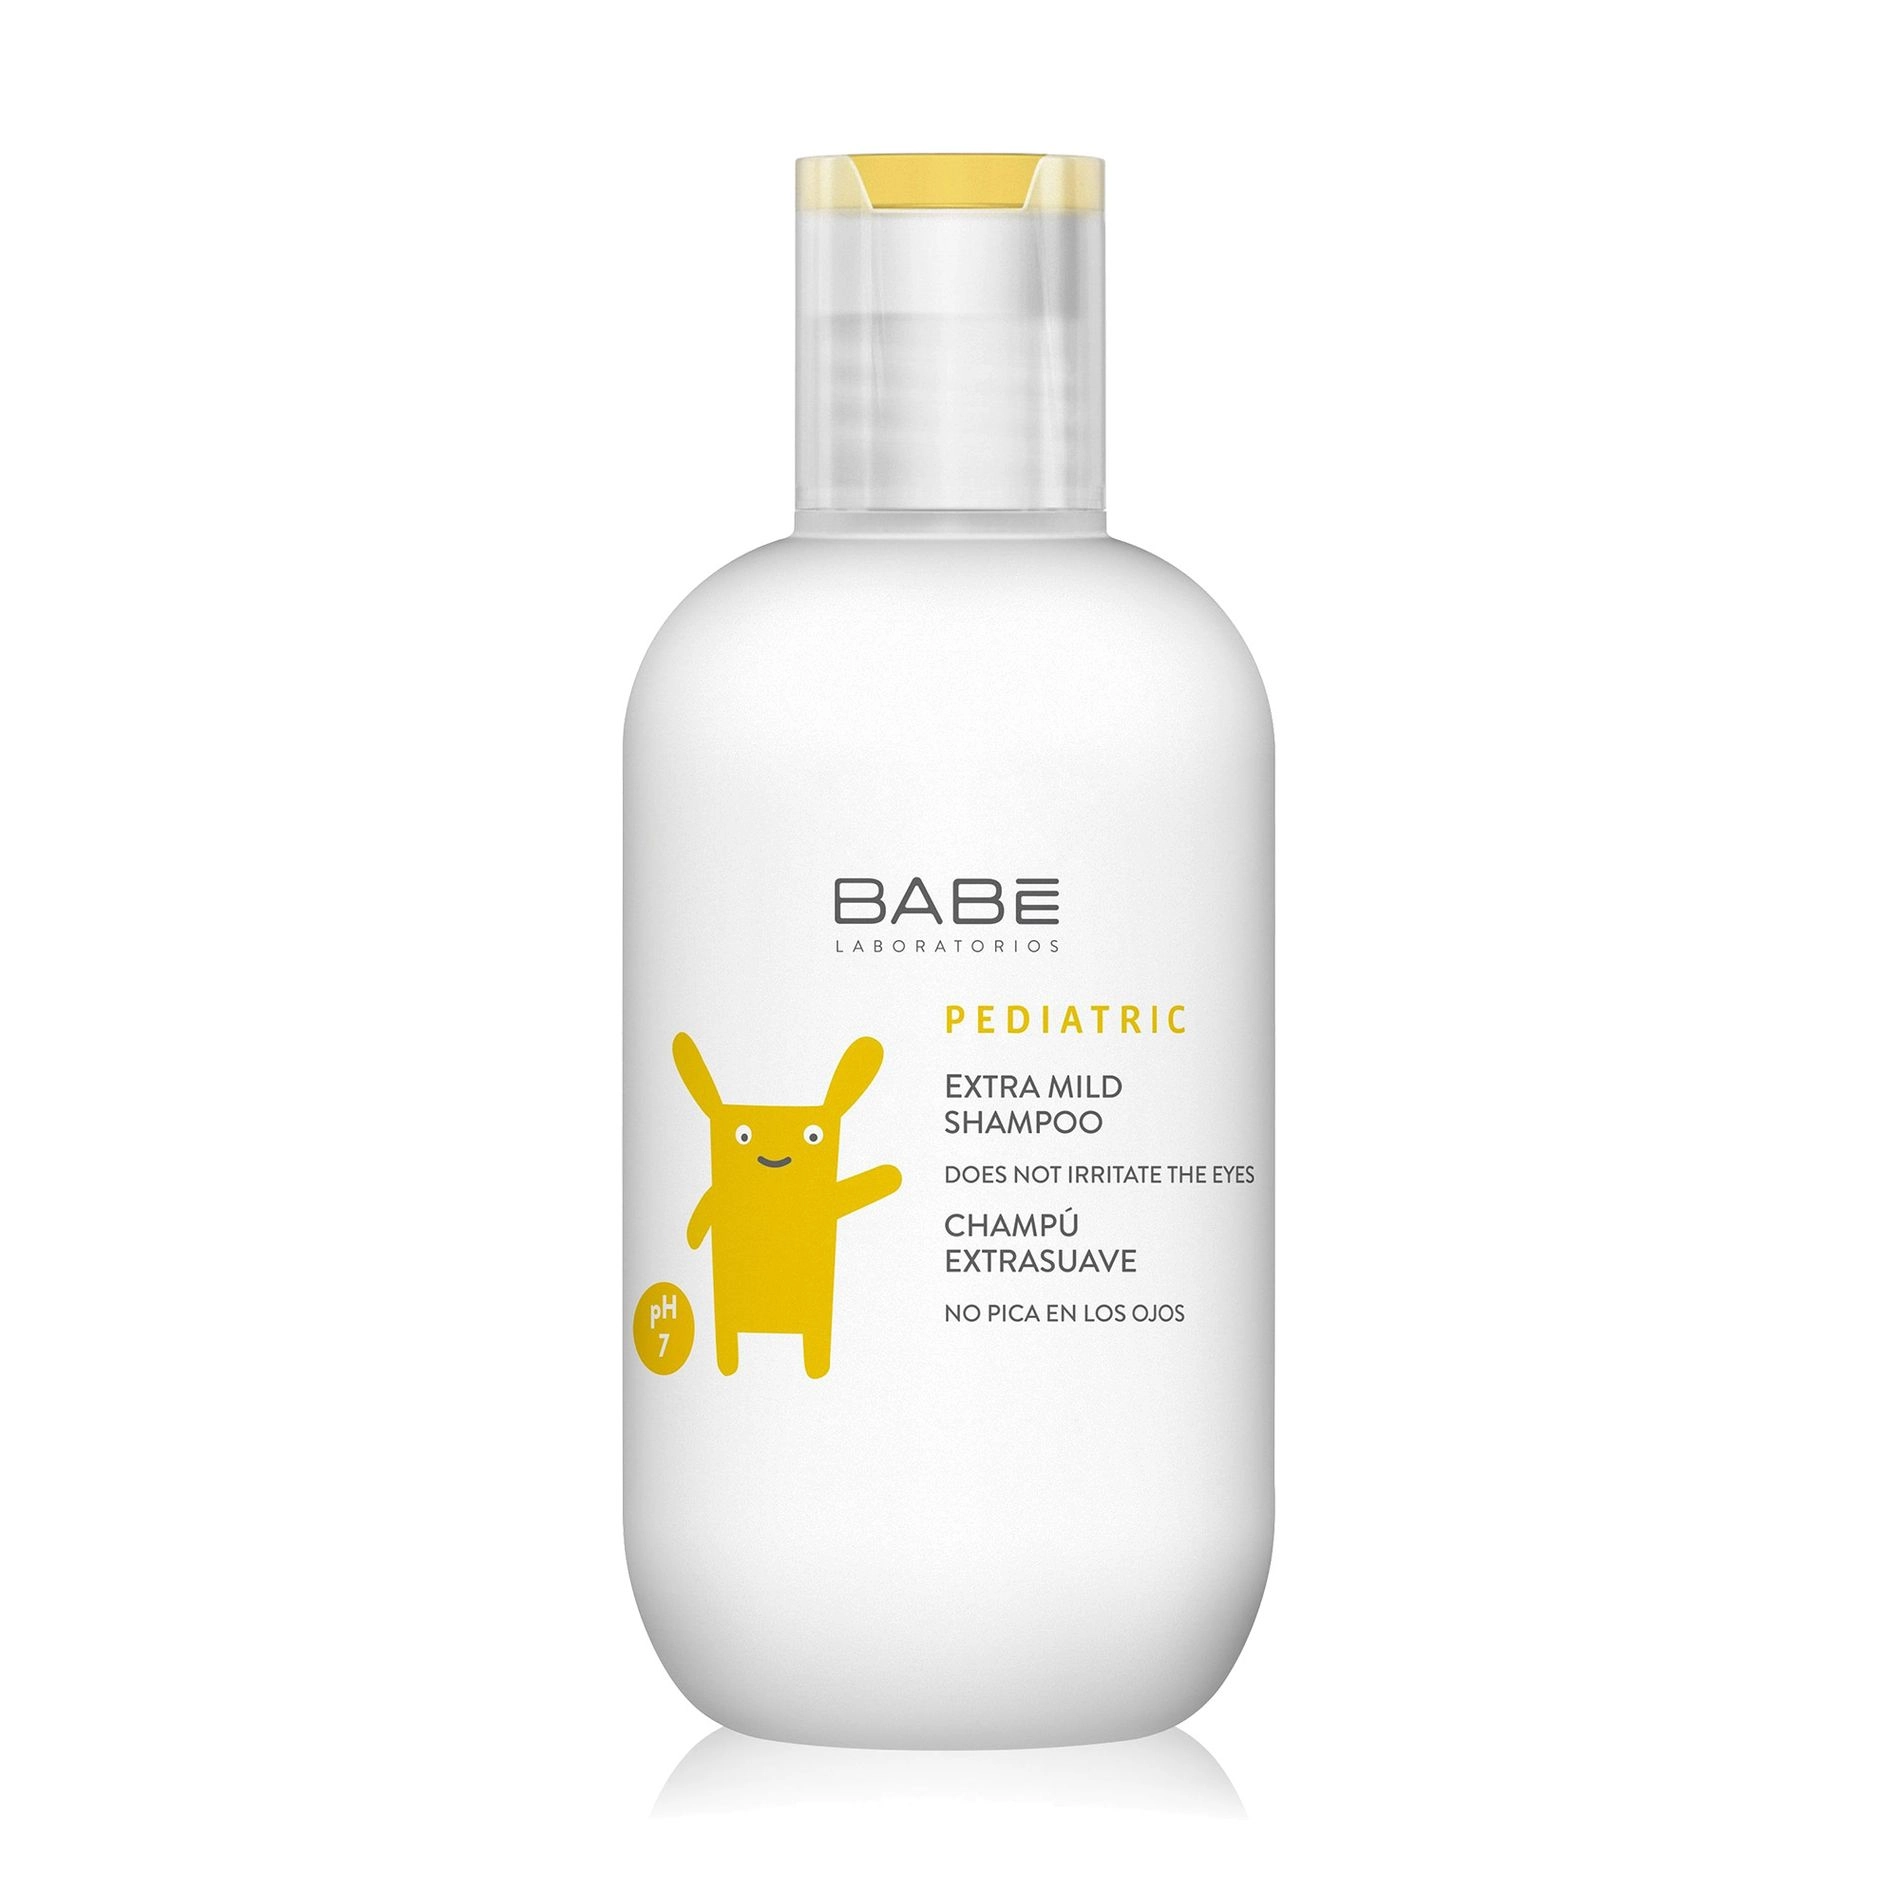 Суперм'який дитячий шампунь з кондиціонером - BABE Laboratorios PEDIATRIC Extra Mild Shampoo, 200 мл - фото N3